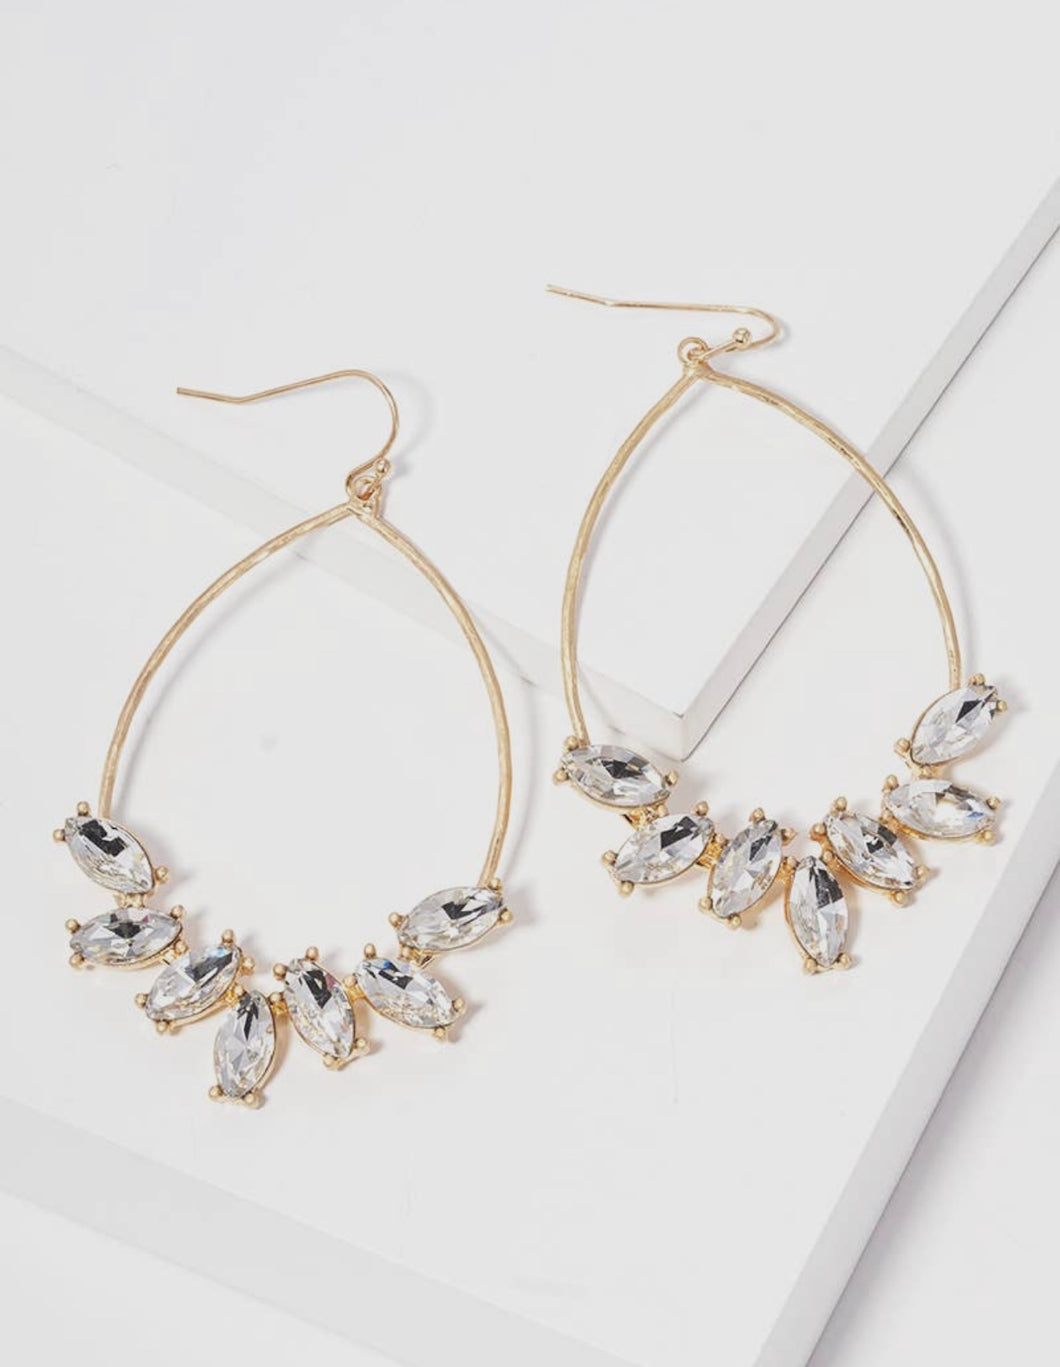 Teardrop Crystal Earrings